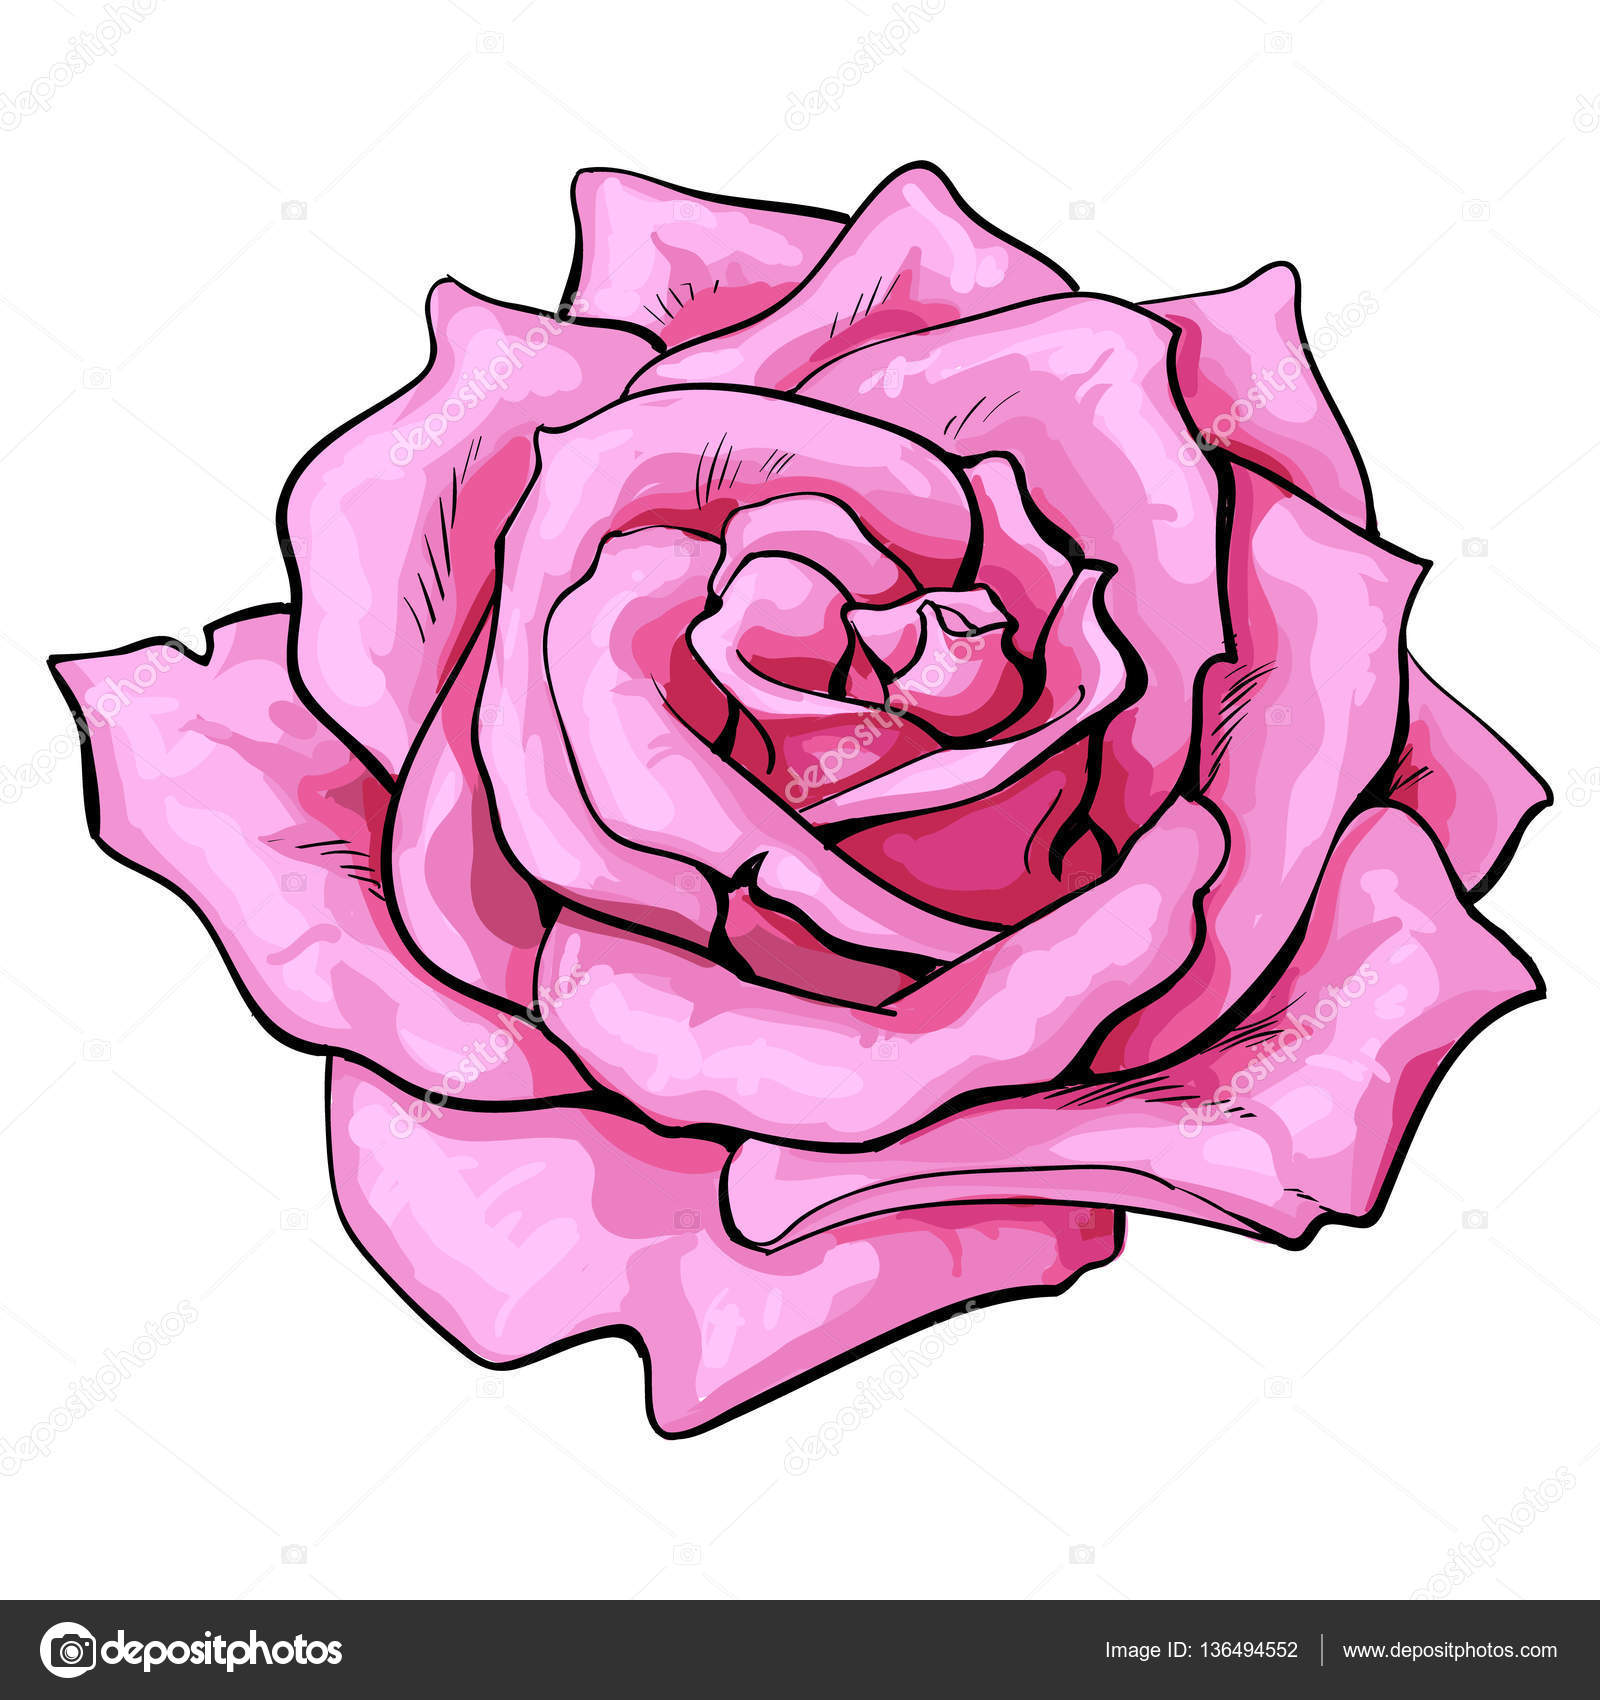 depositphotos_136494552 stock illustration deep pink rose top view